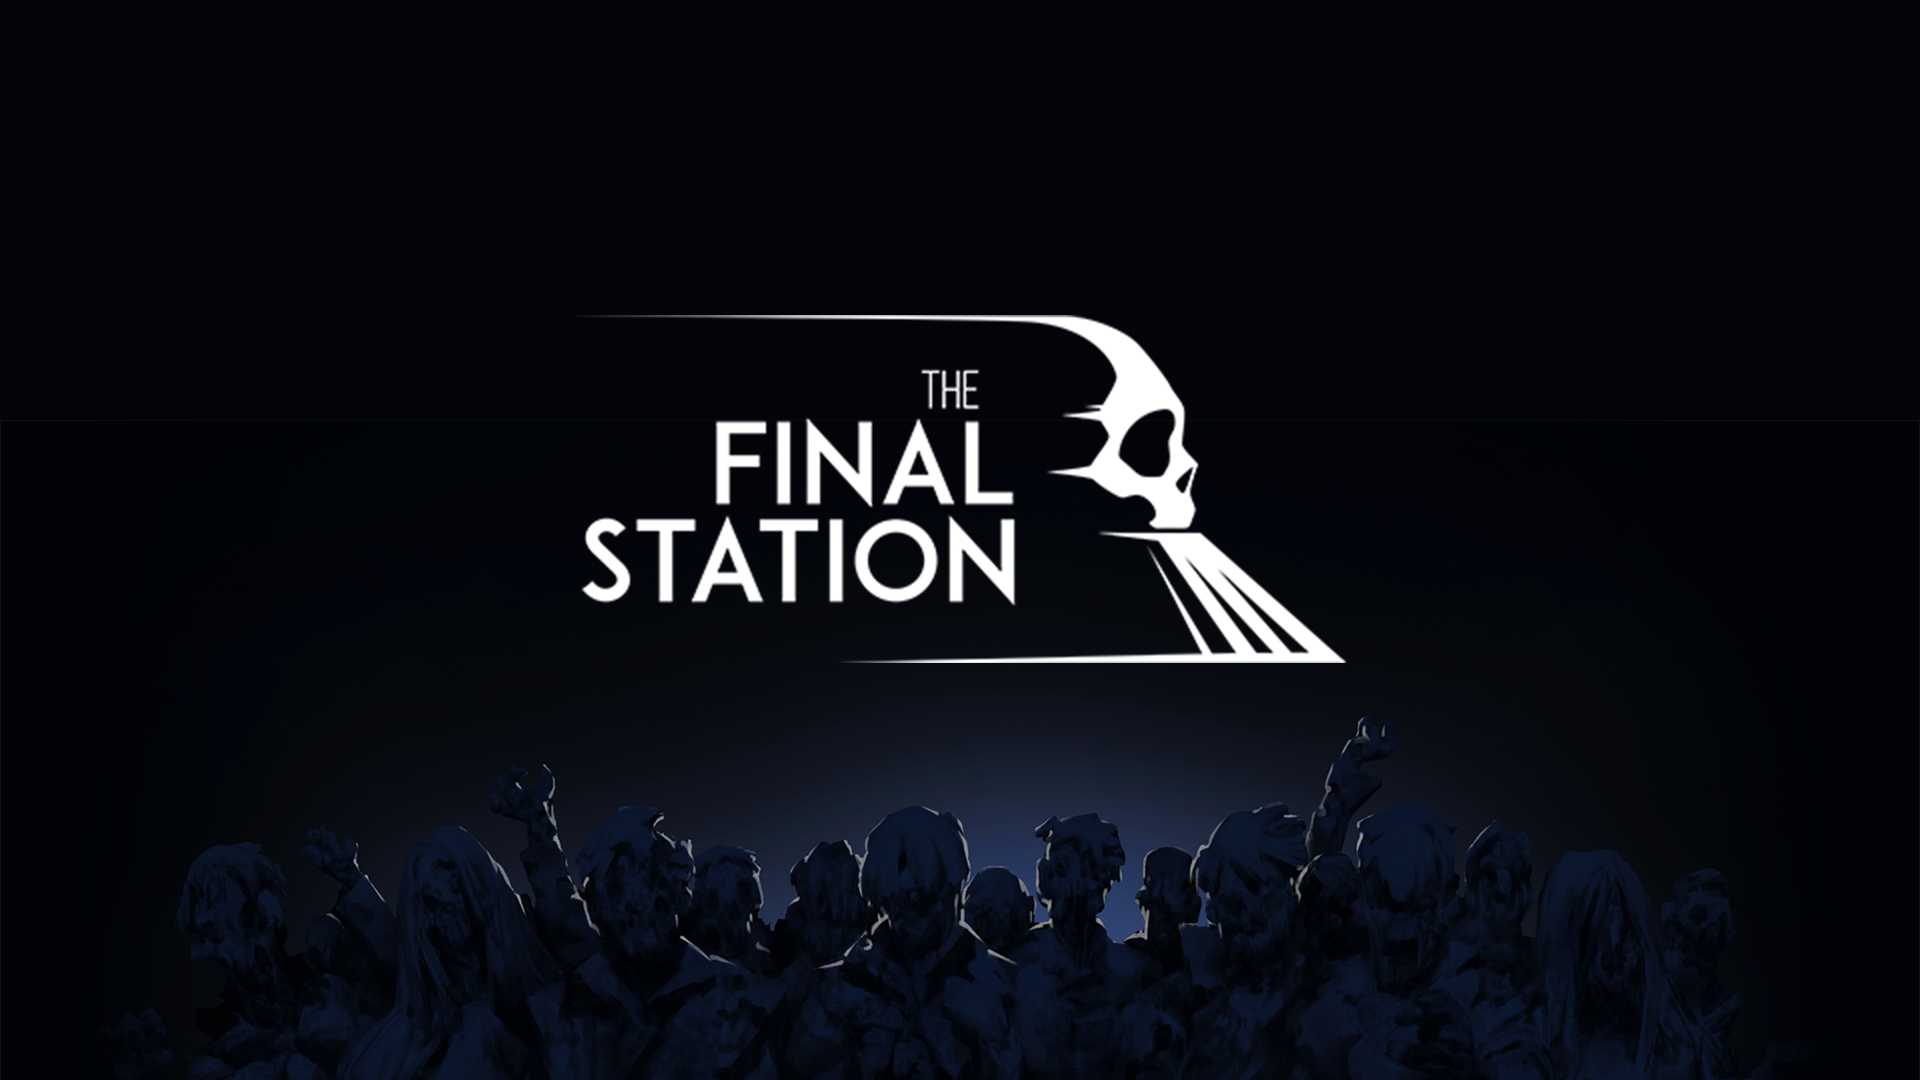 The finals запуск. The Final Station. The Final Station арт. The finslstation. Final Station игра.